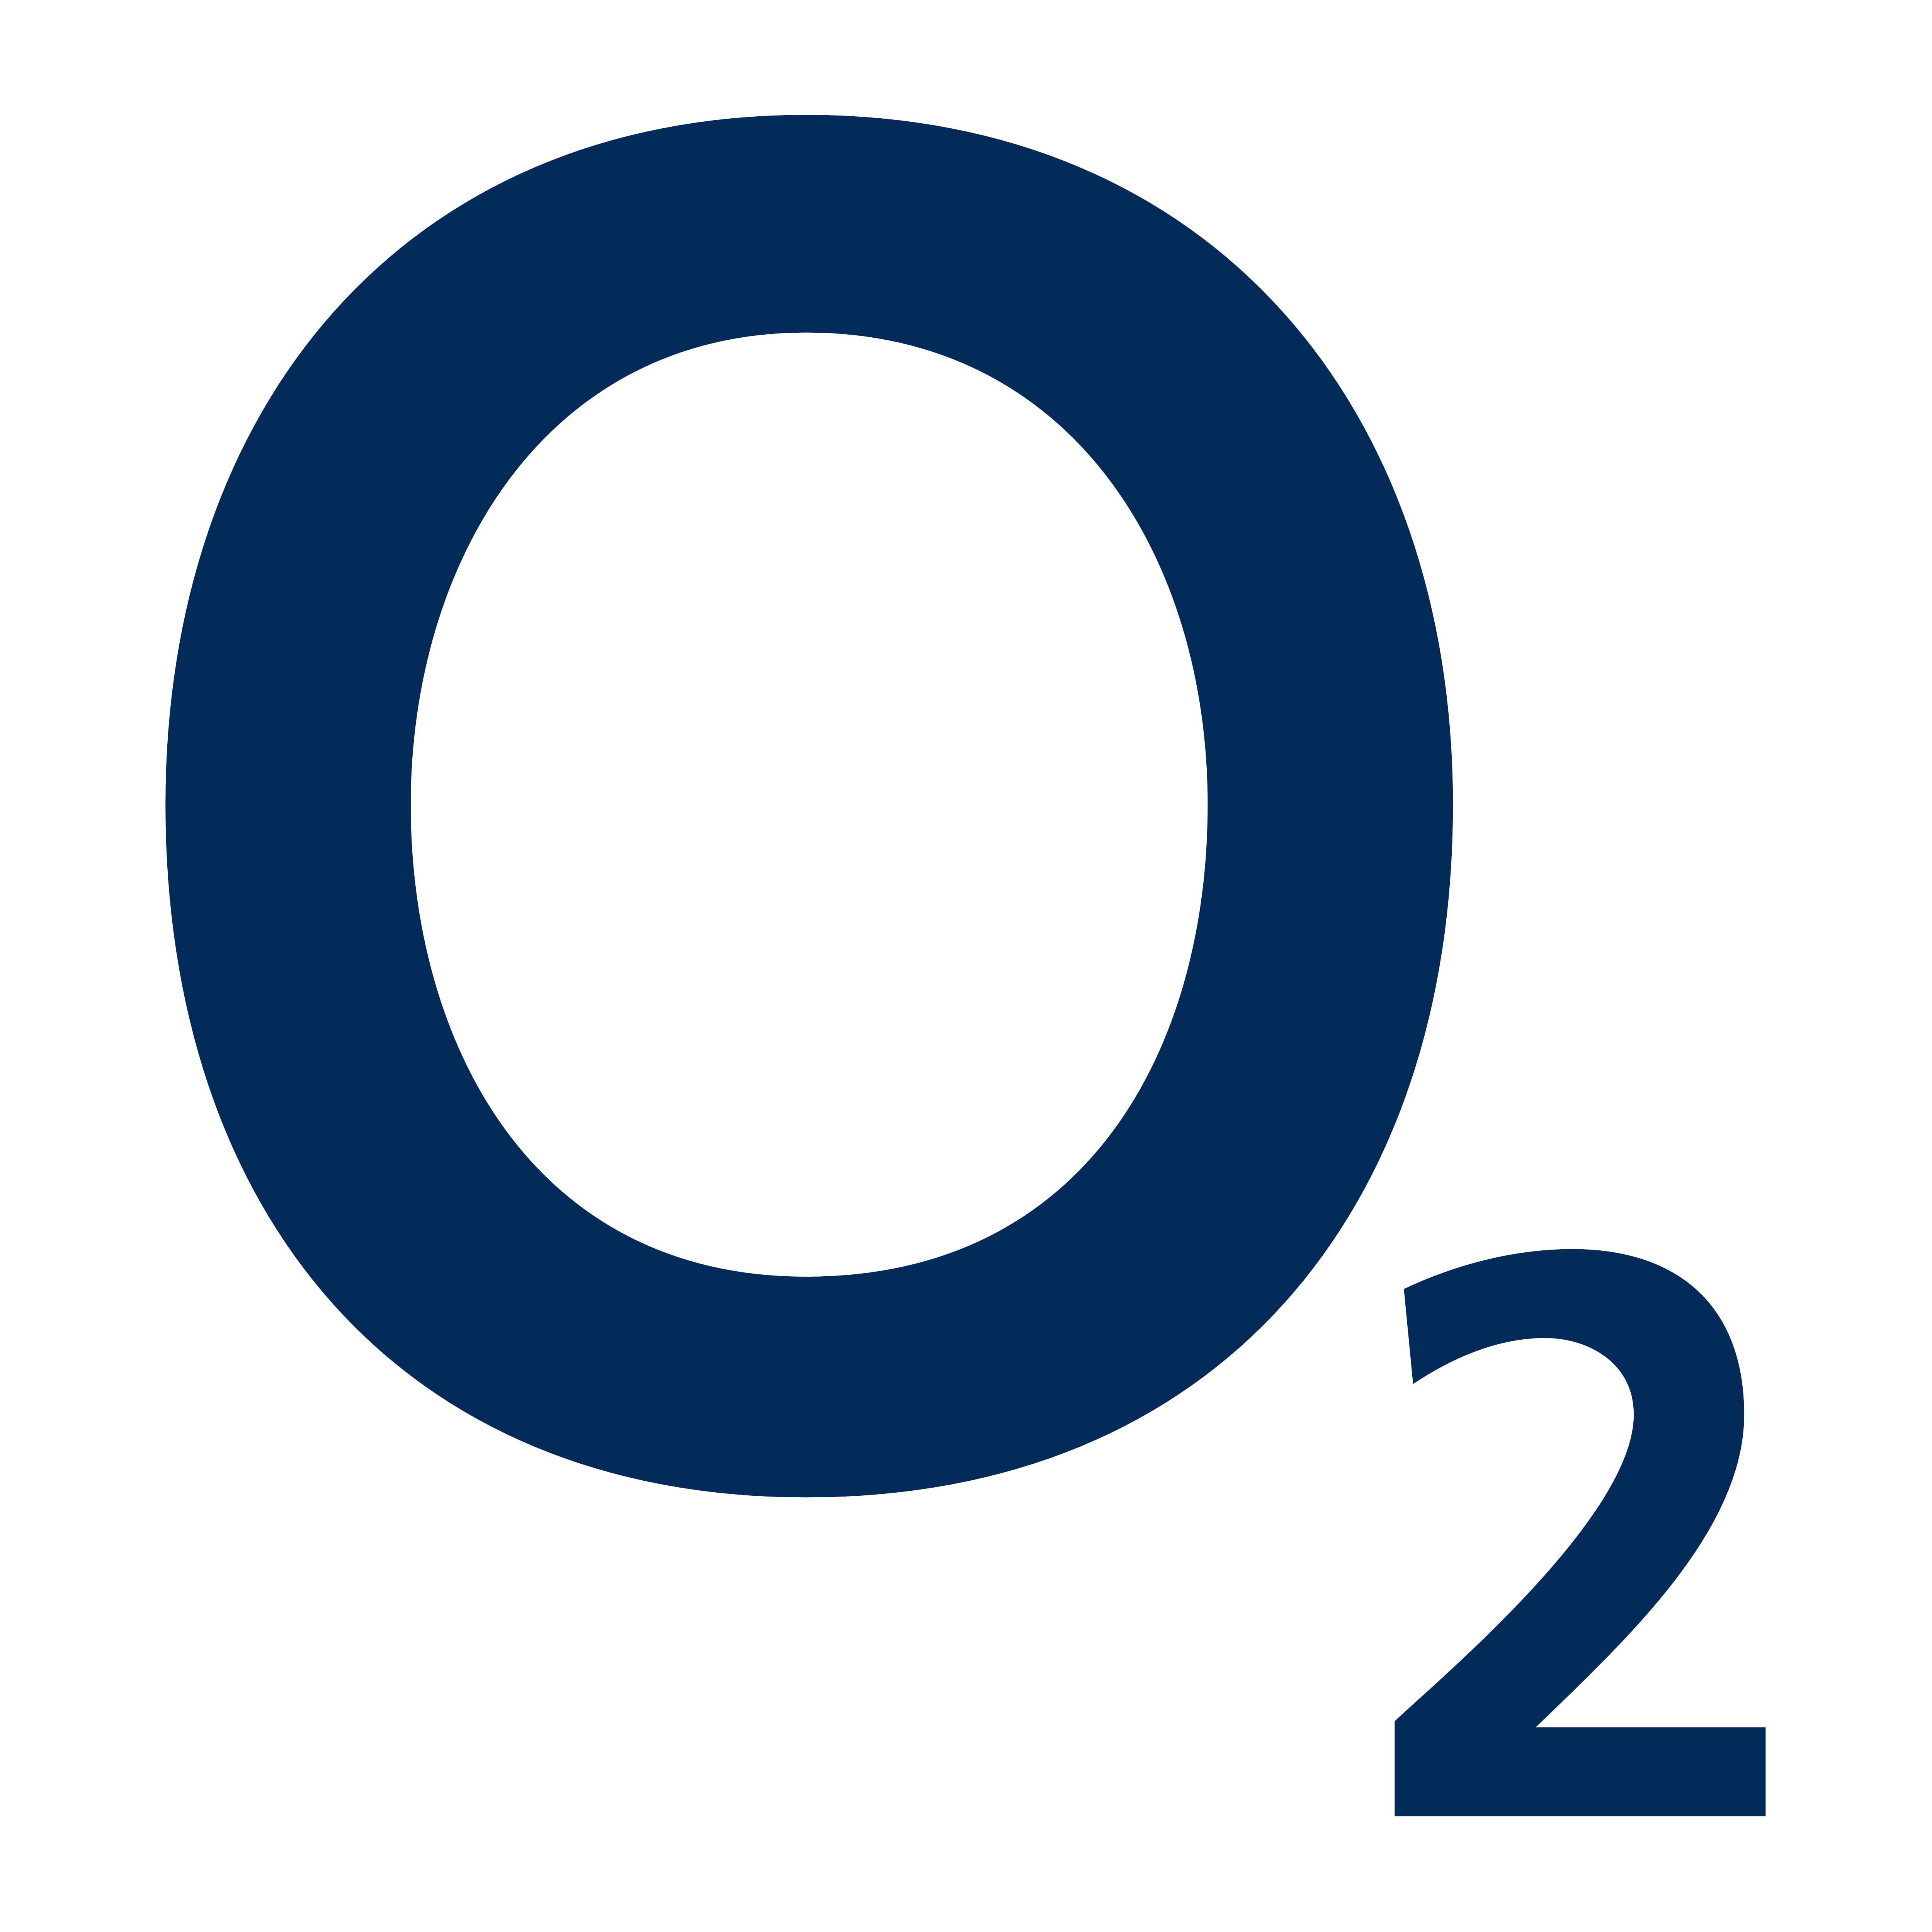 O2 – Logos Download